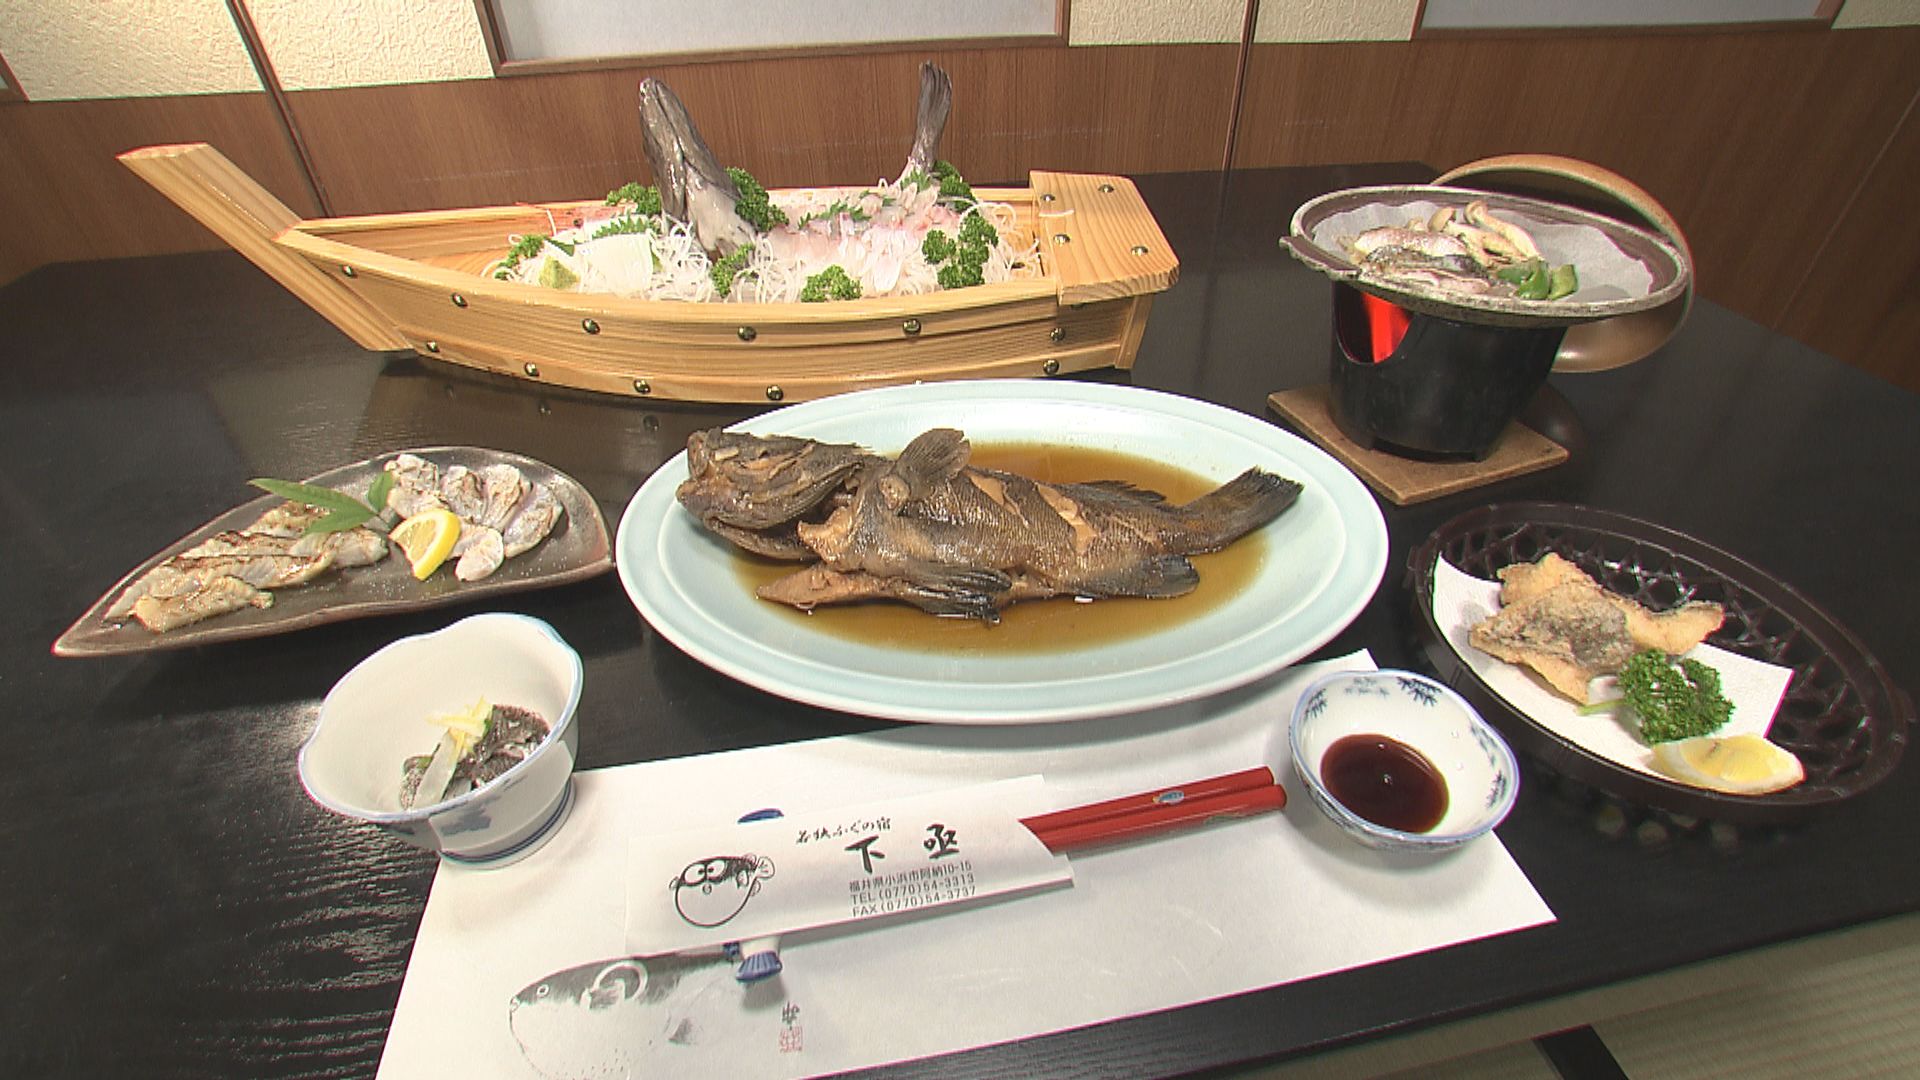 県のブランド養殖魚「若狭まはた」のおいしさをアピール 小浜市の民宿がコース料理を用意